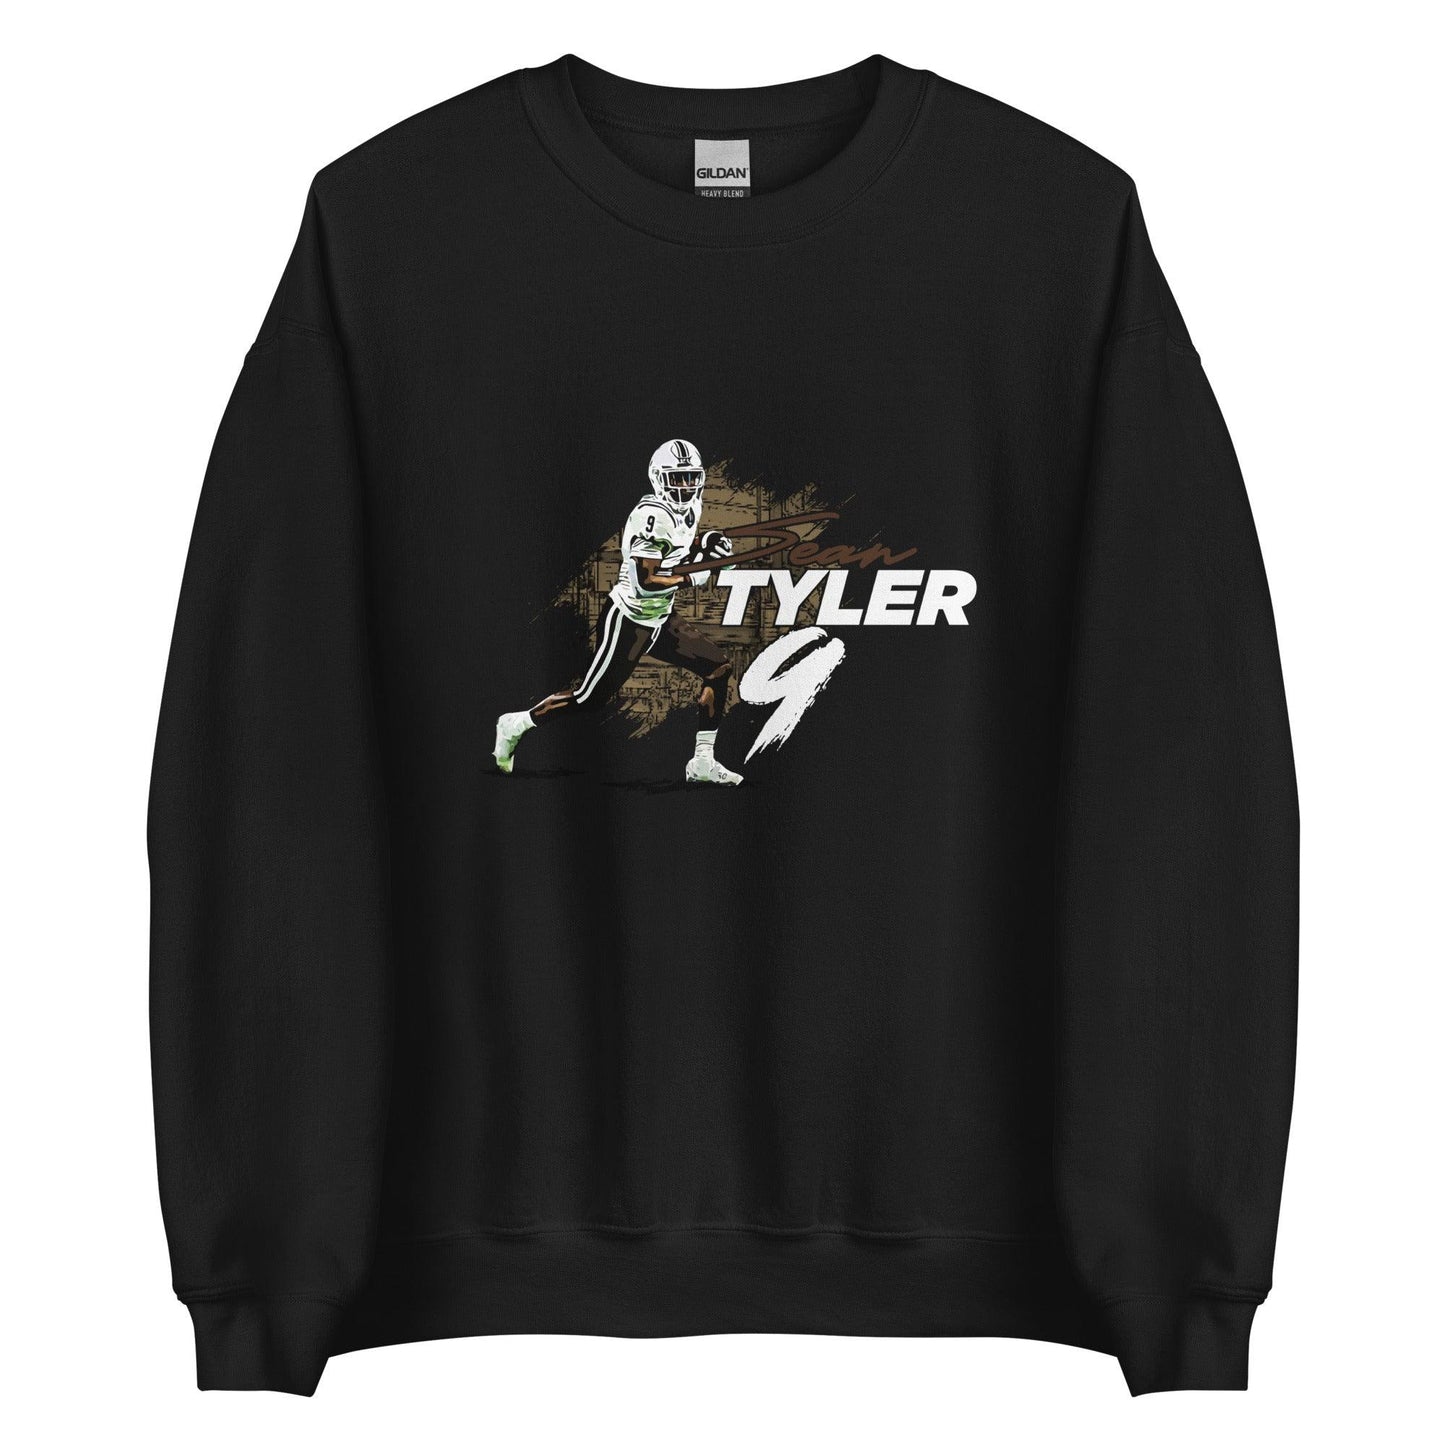 Sean Tyler "Run It" Sweatshirt - Fan Arch